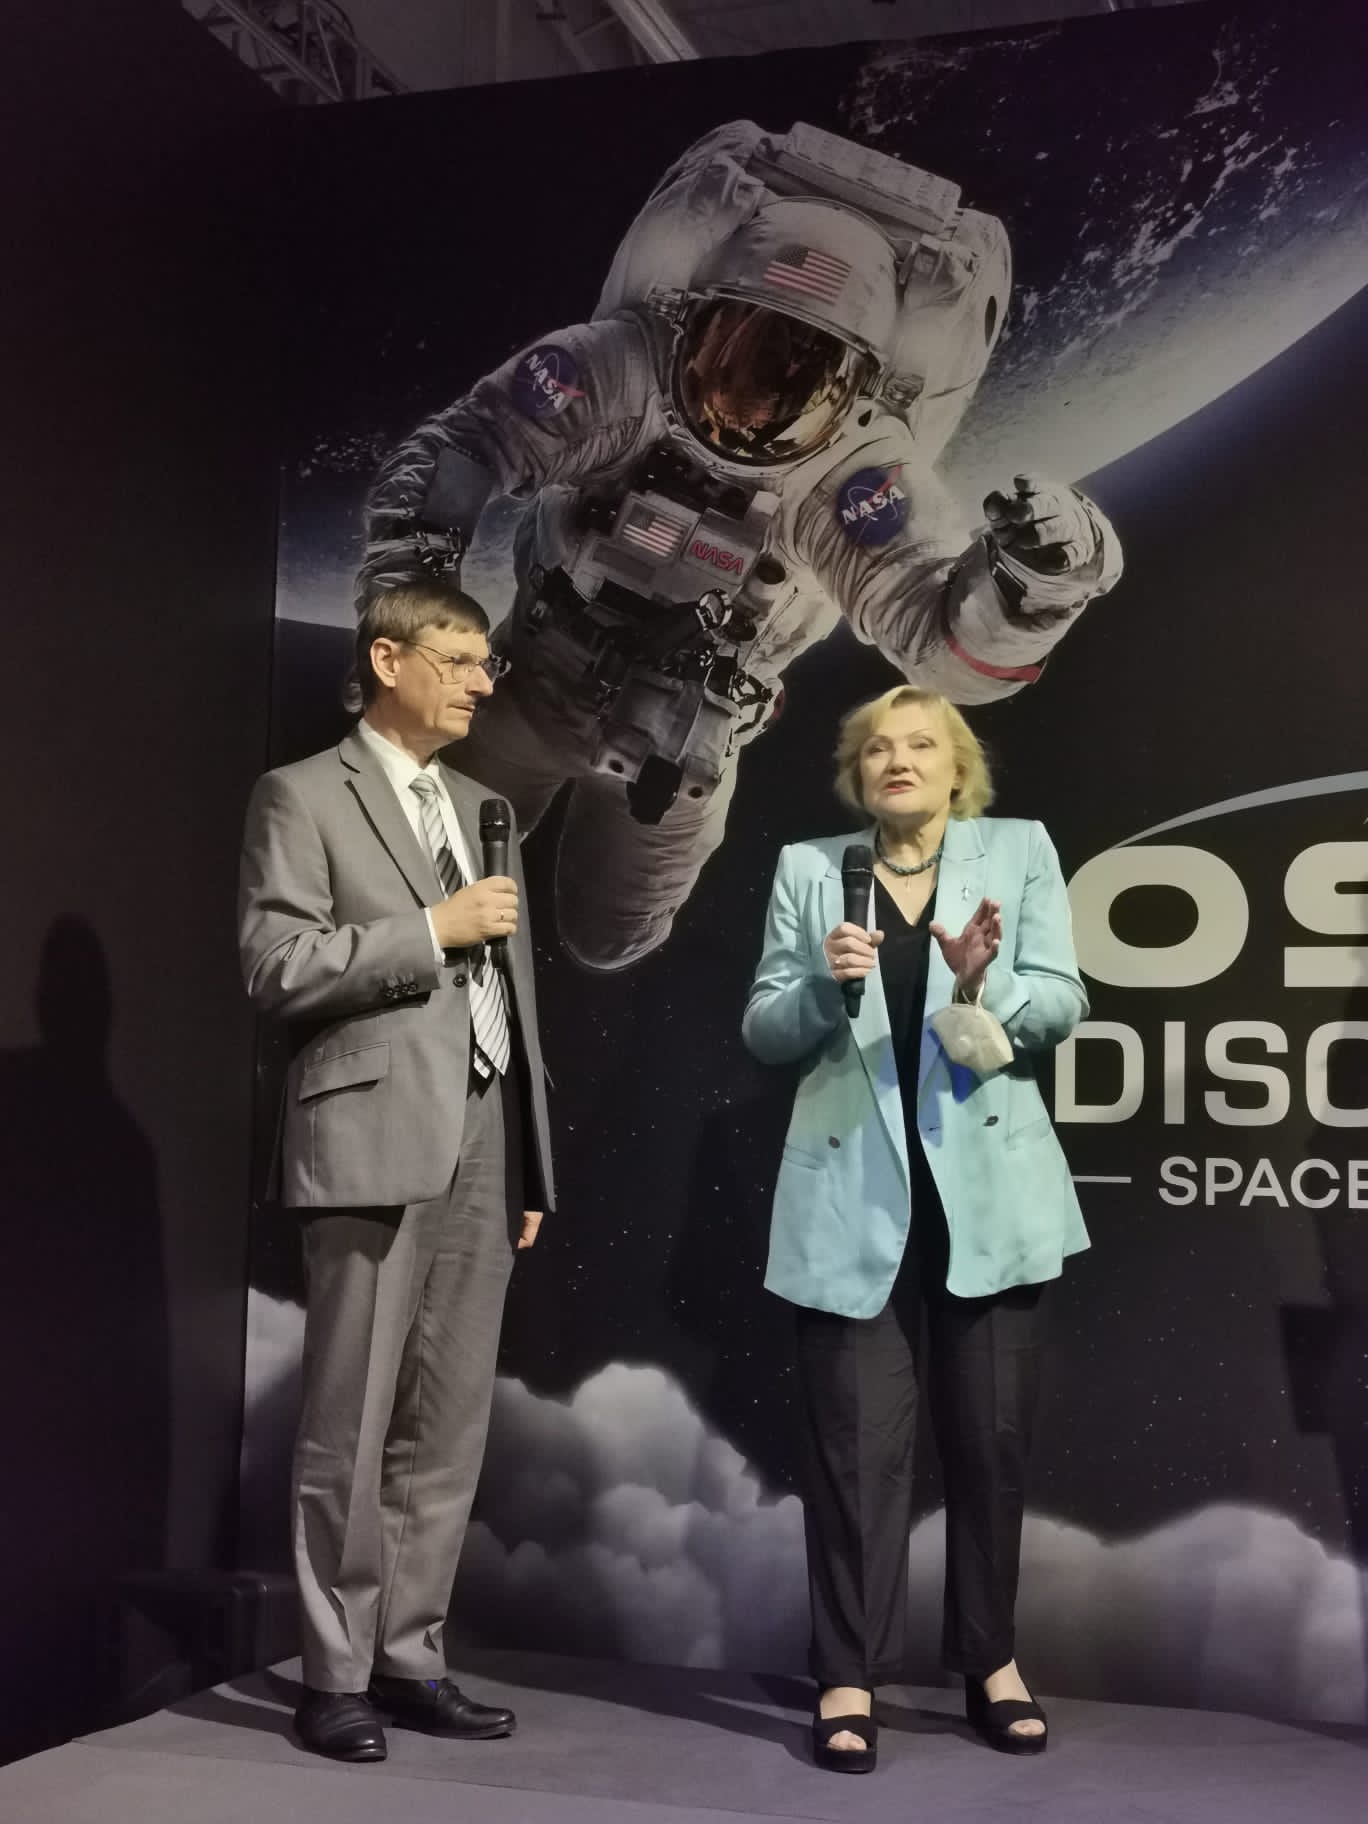 Wystawa Cosmos Discovery z udziałem POLSA